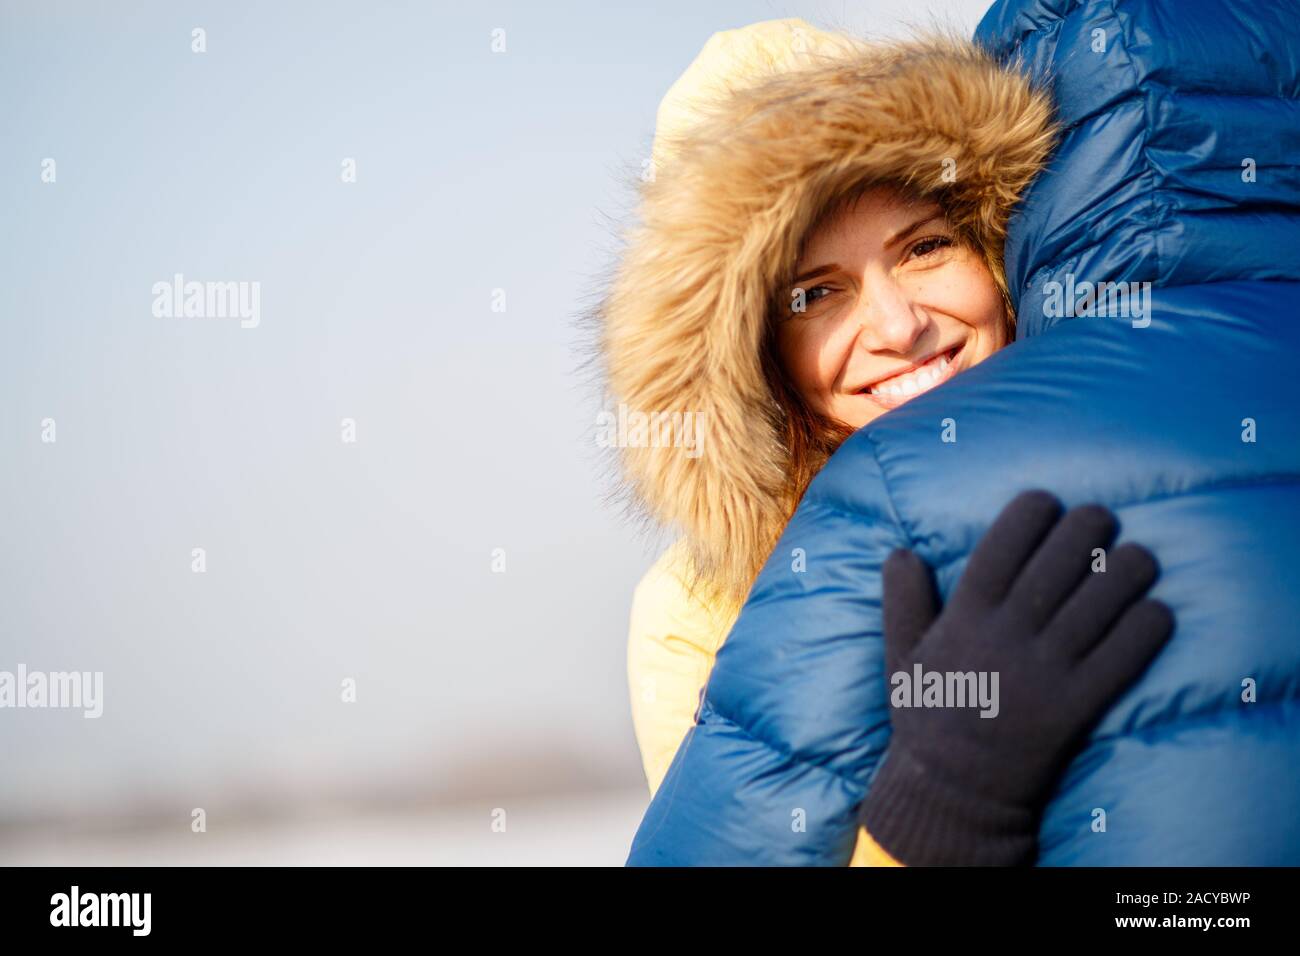 Felice coppia di maschio e femmina abbracciando ain inverno all'aperto Foto Stock